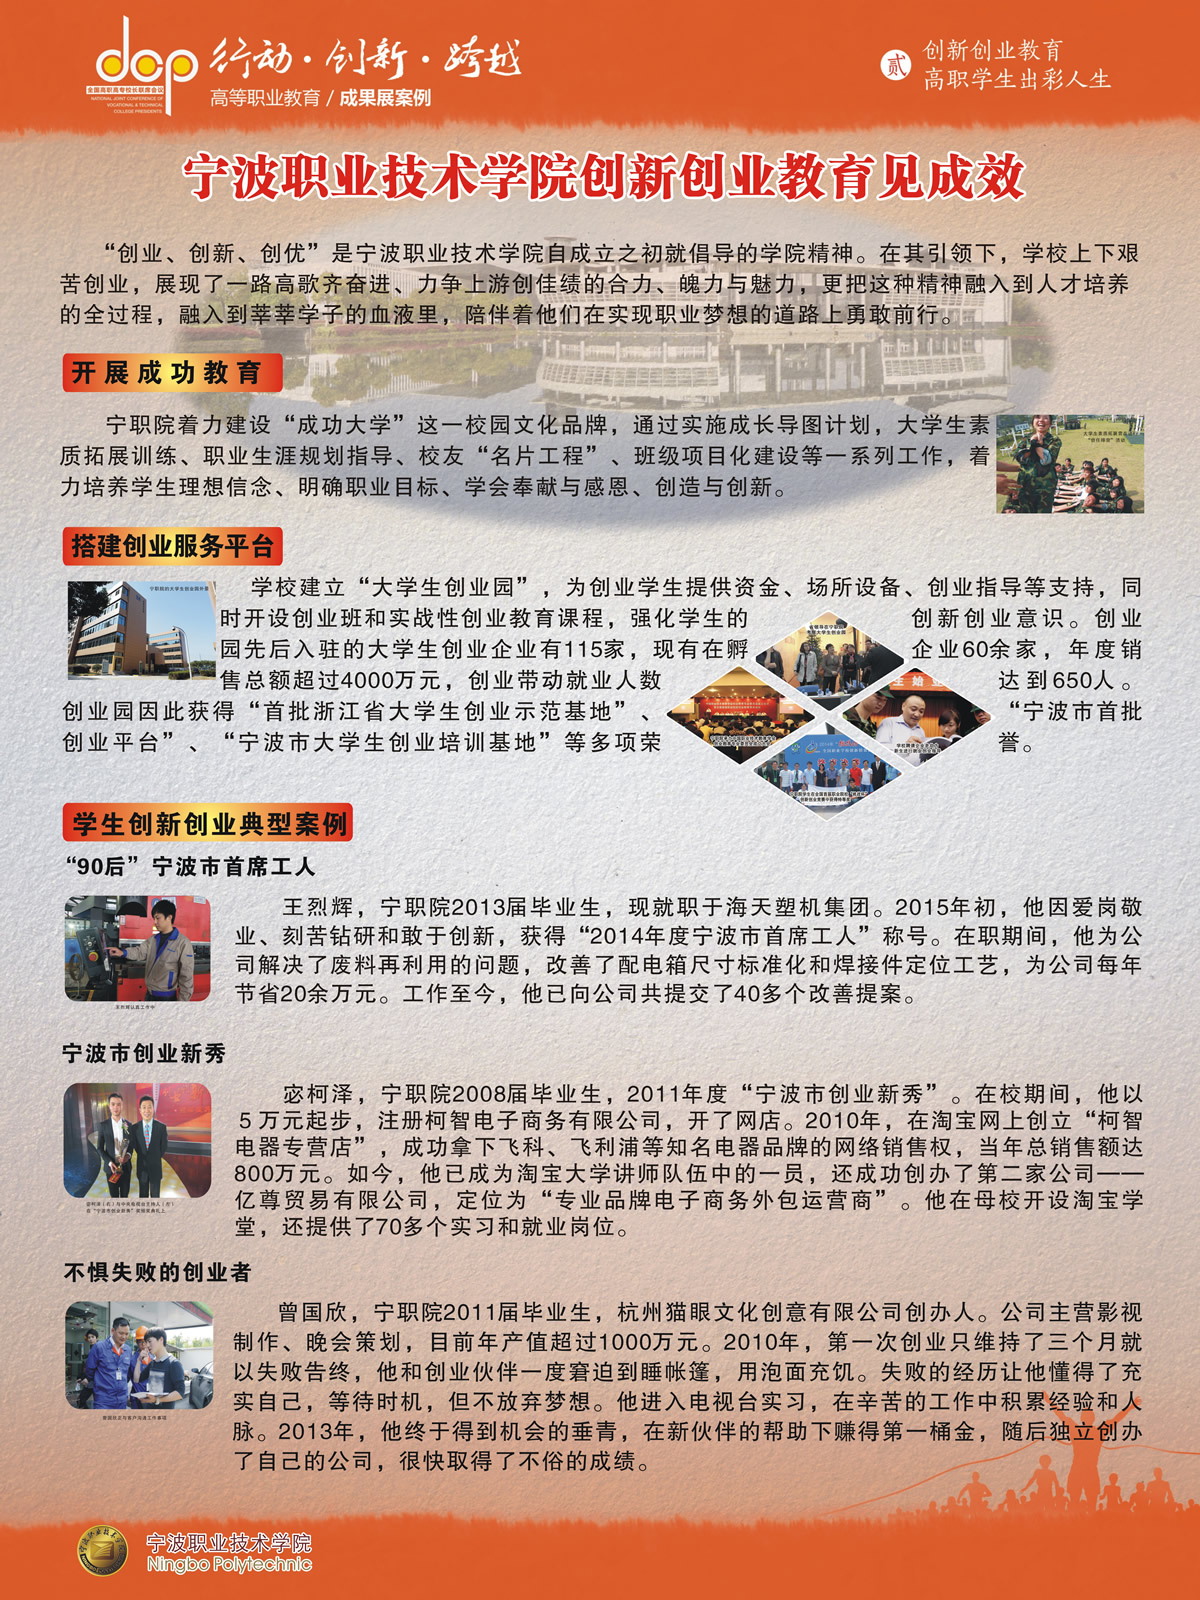 10.宁波职业技术学院+宣传展版+创新创业教育.jpg